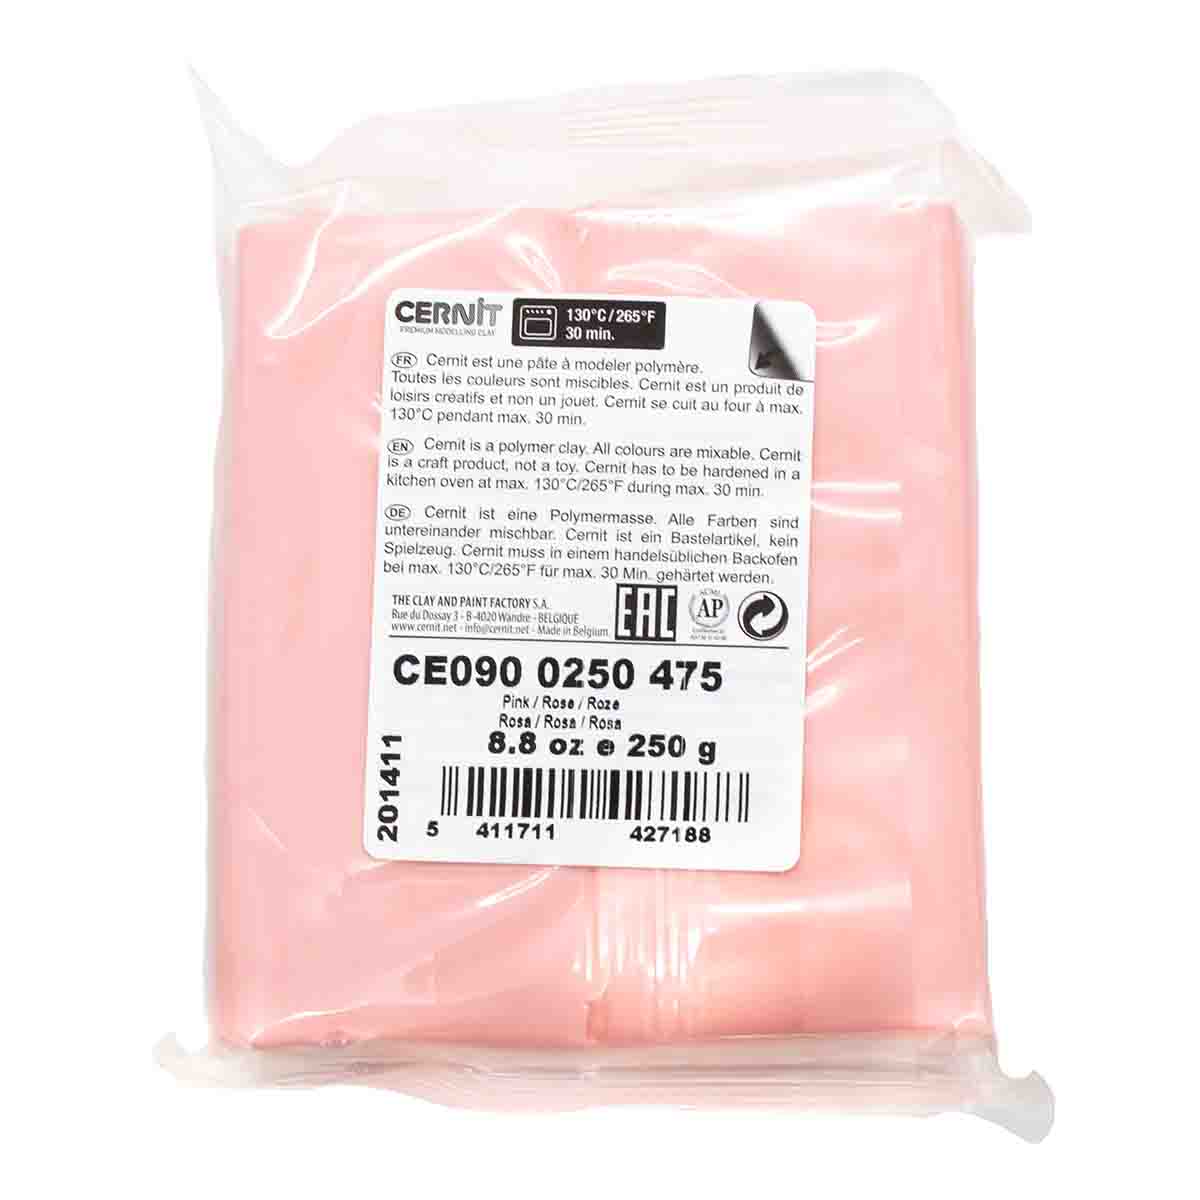 Полимерная глина Cernit пластика запекаемая Цернит № 1 250 гр CE090025 - фото 9